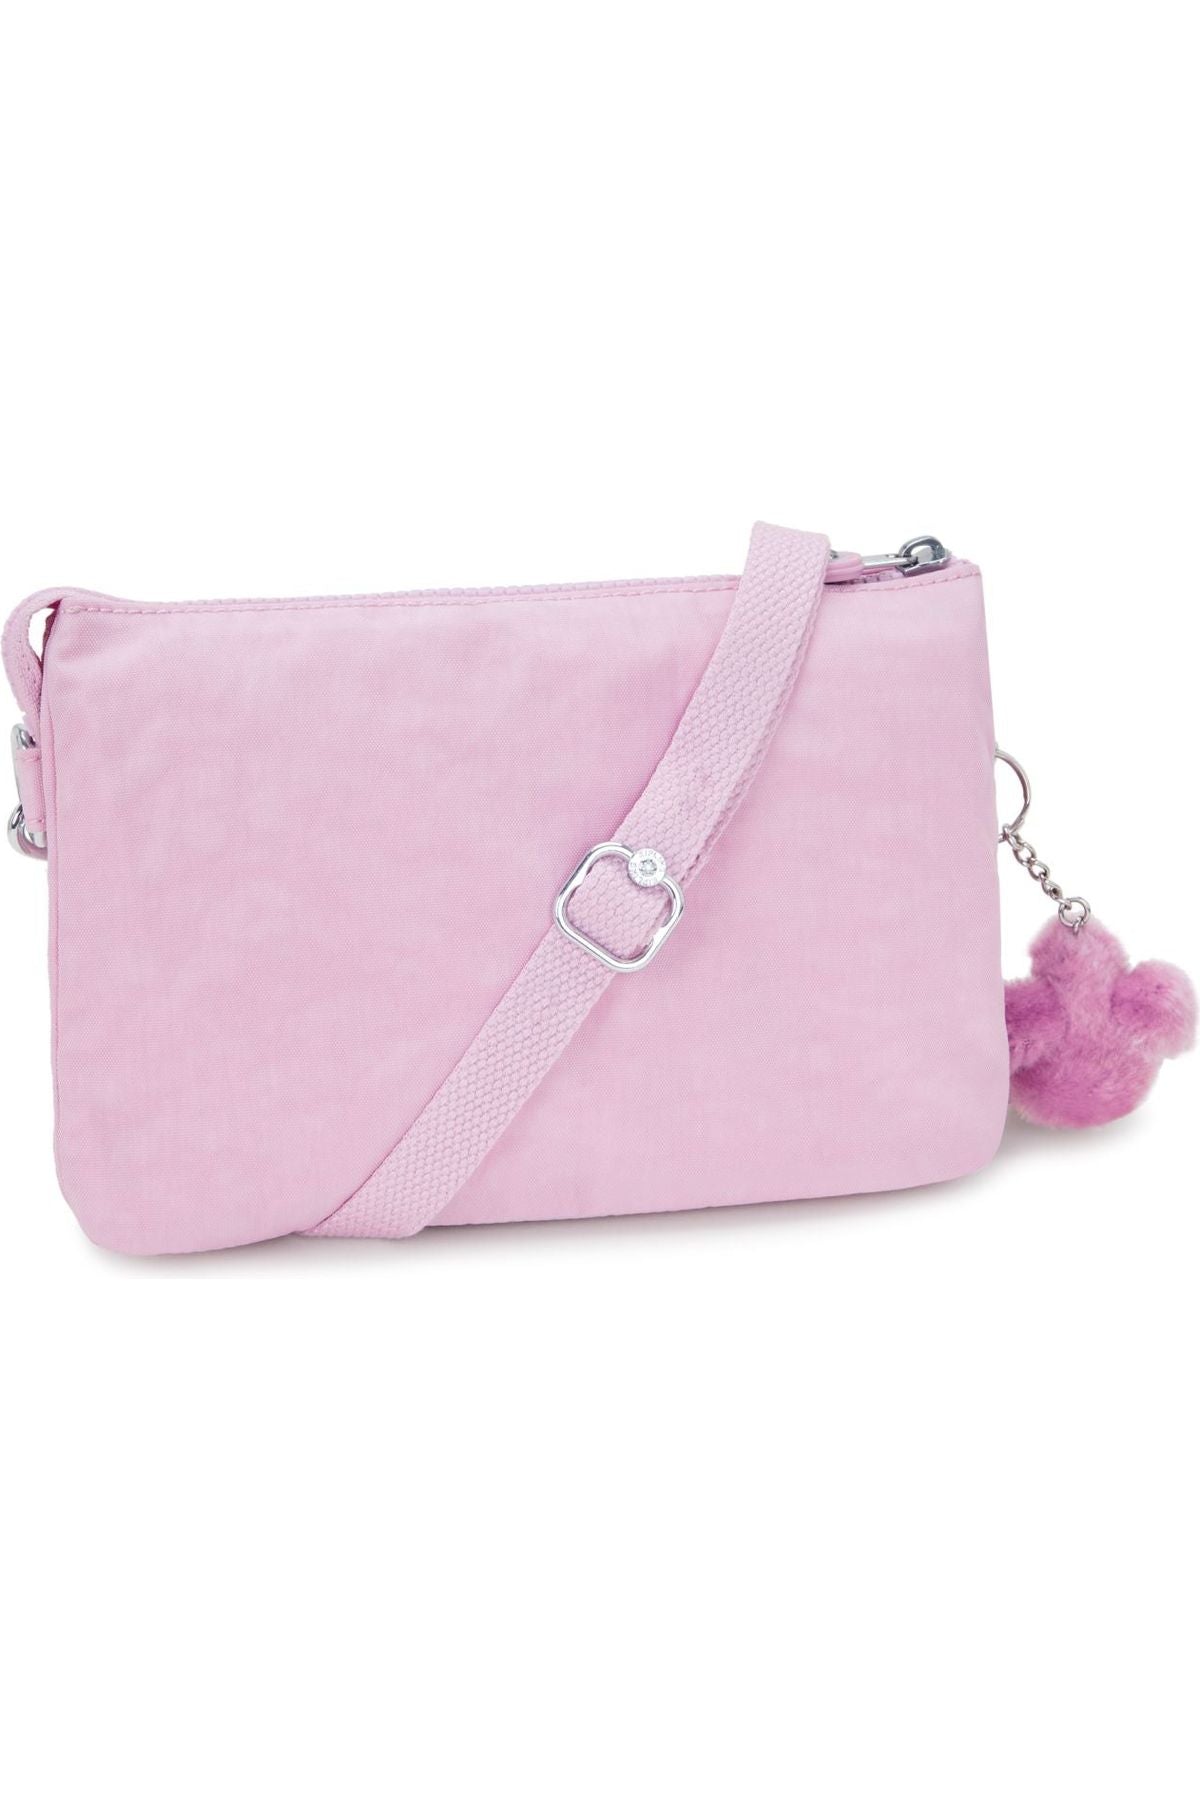 Kipling Riri  Handbag in blooming pink